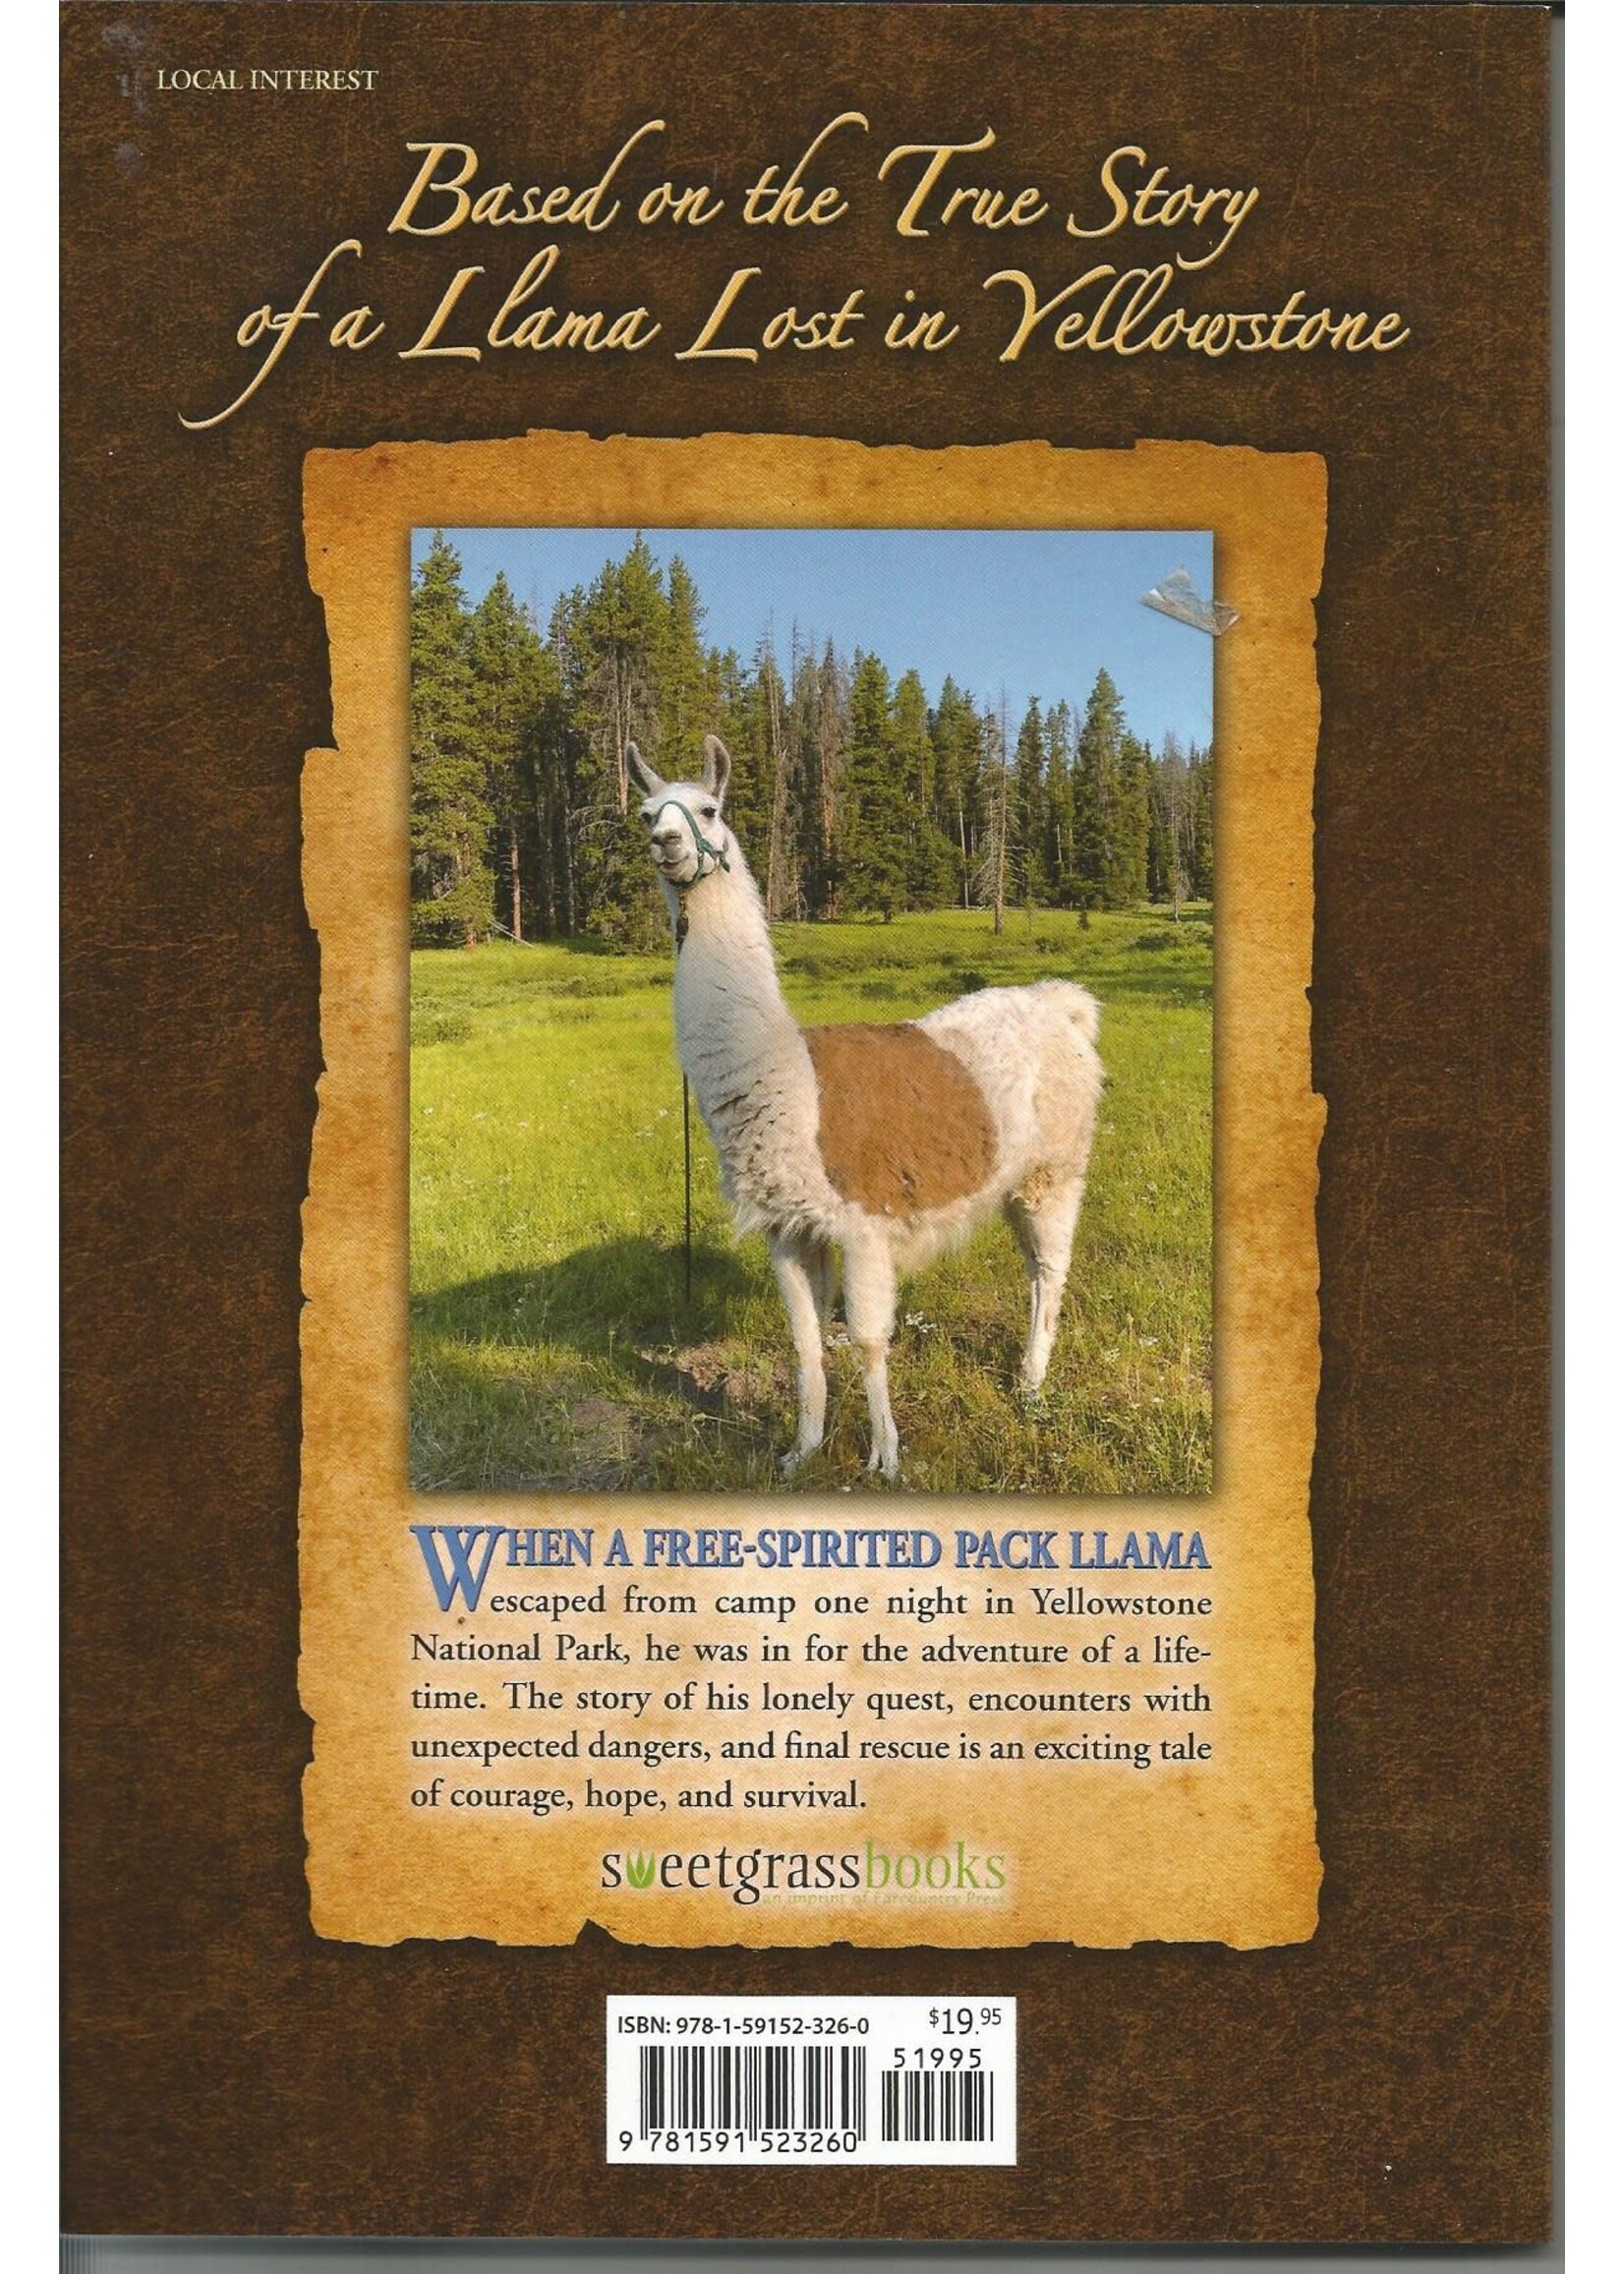 Sweetgrassbooks Lewis the Yellowstone Llama